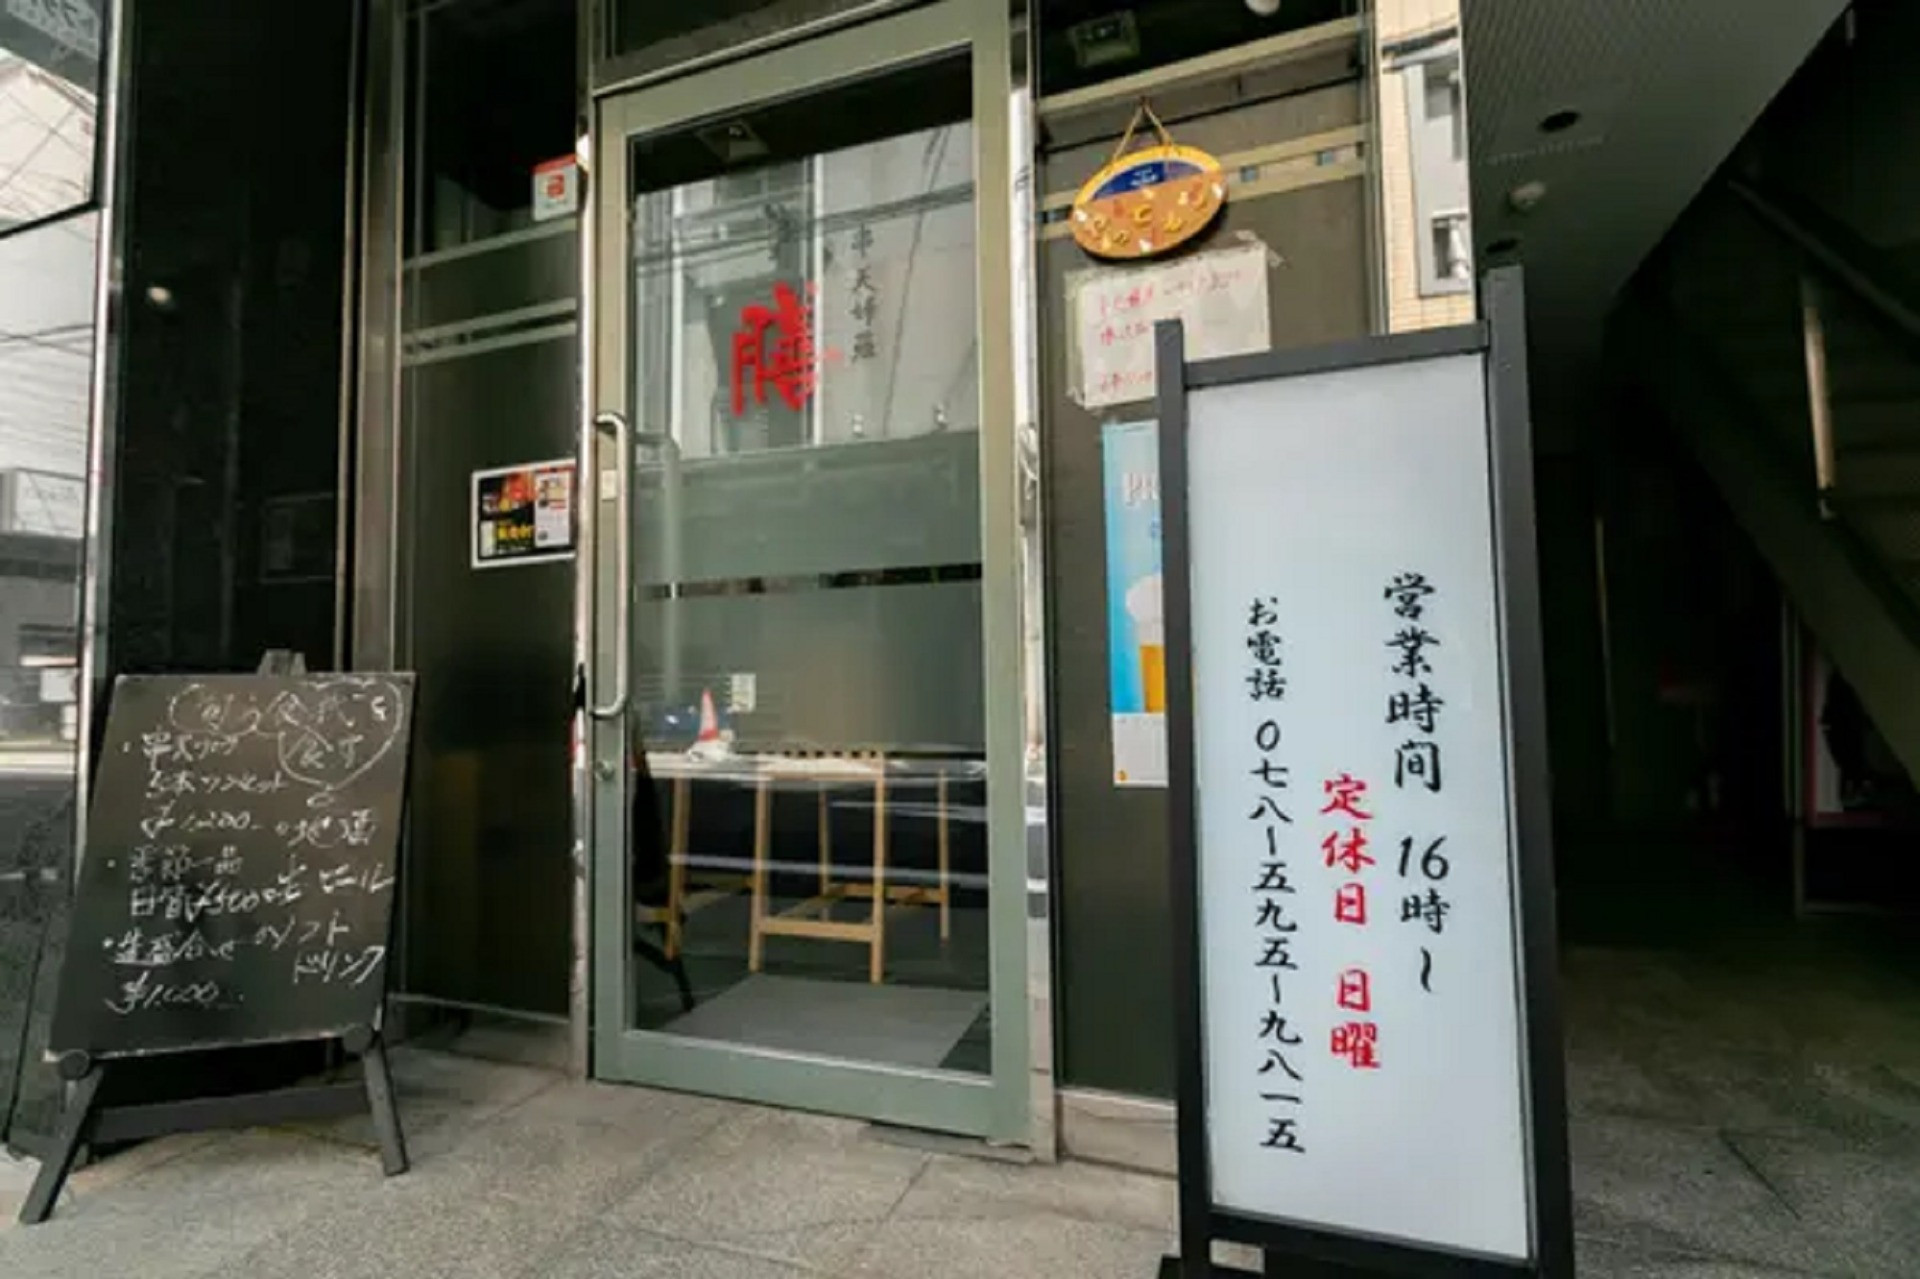 便利な三宮の駅チカに店舗を構え串天ぷらなどをご提供しております